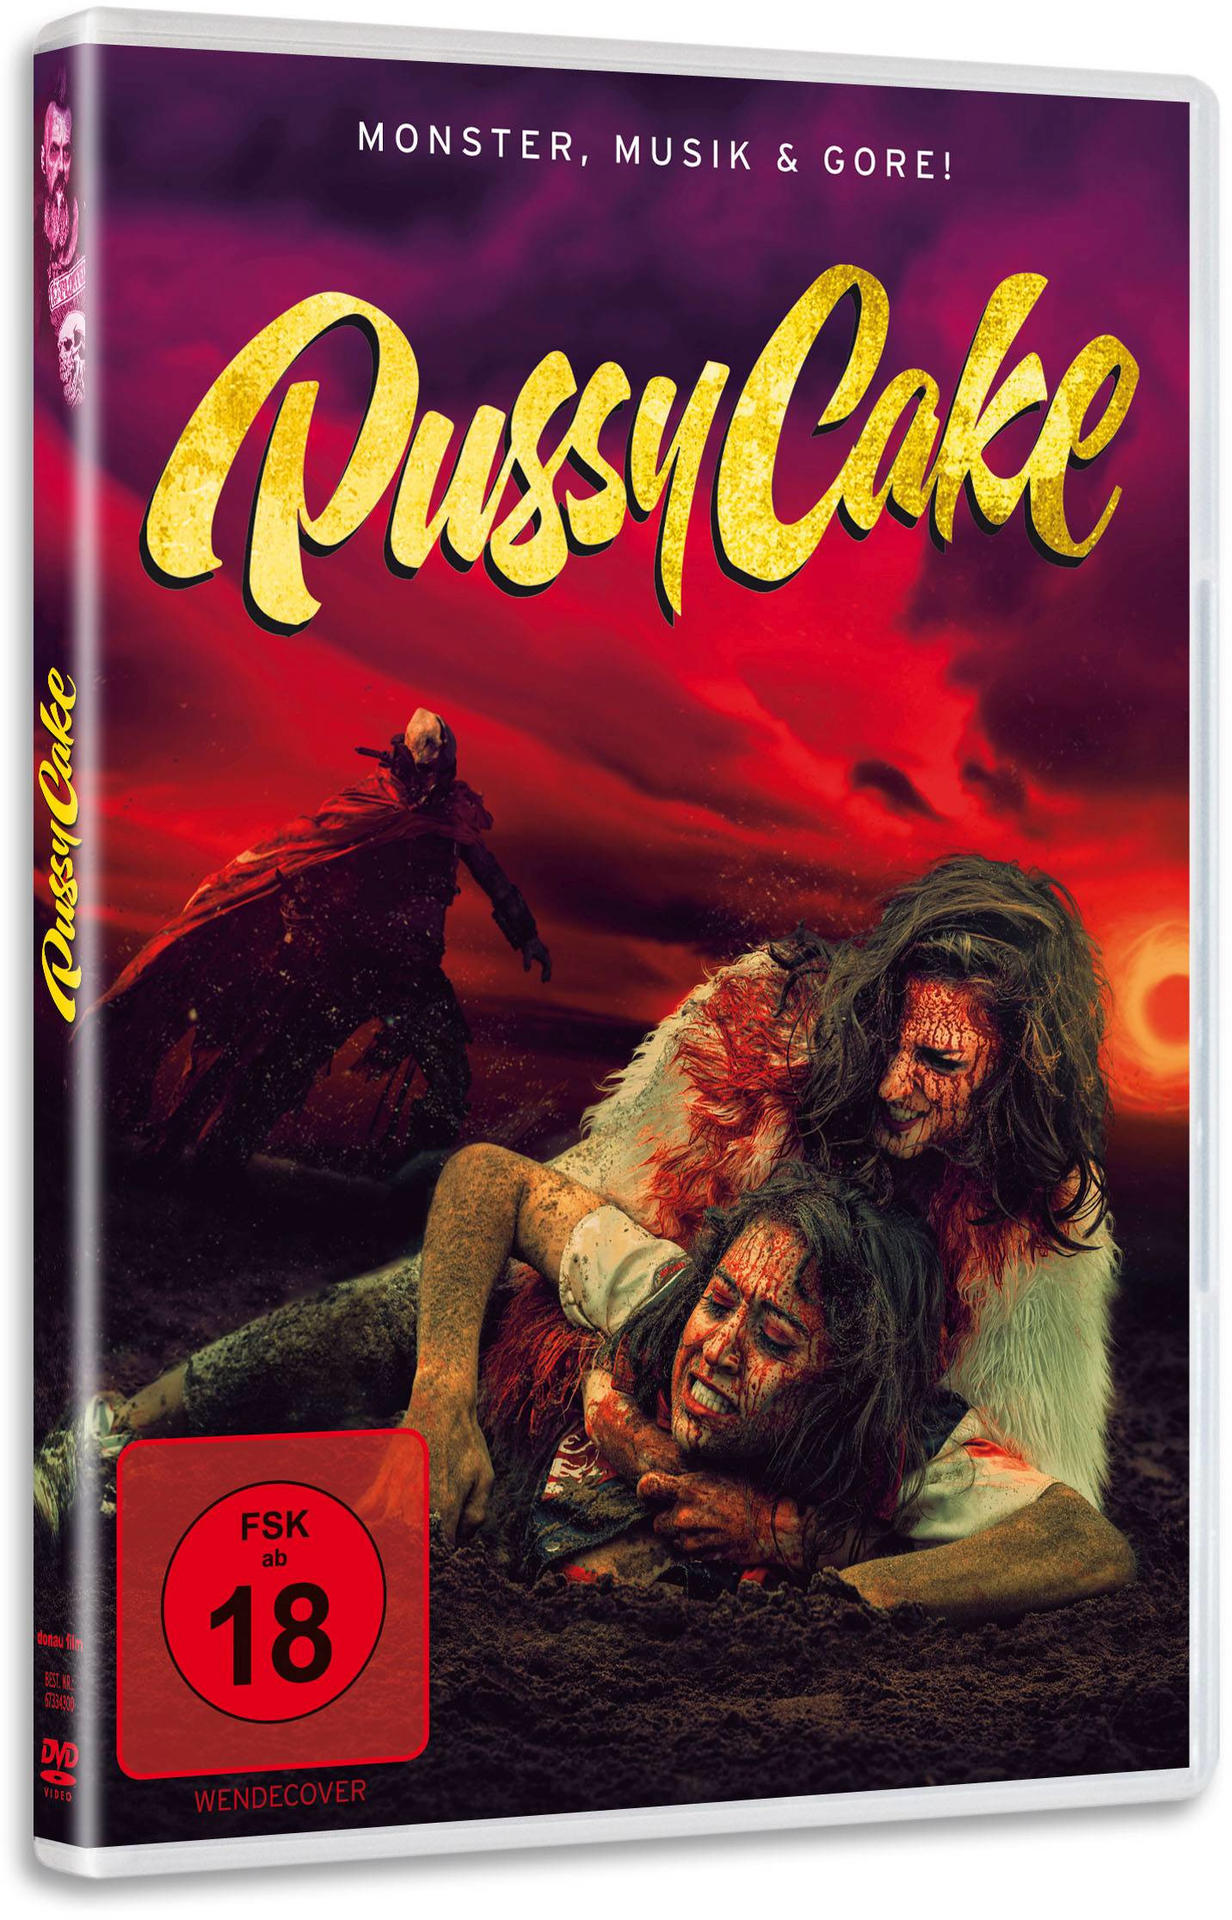 Pussycake-Monster,Musik und DVD Gore!